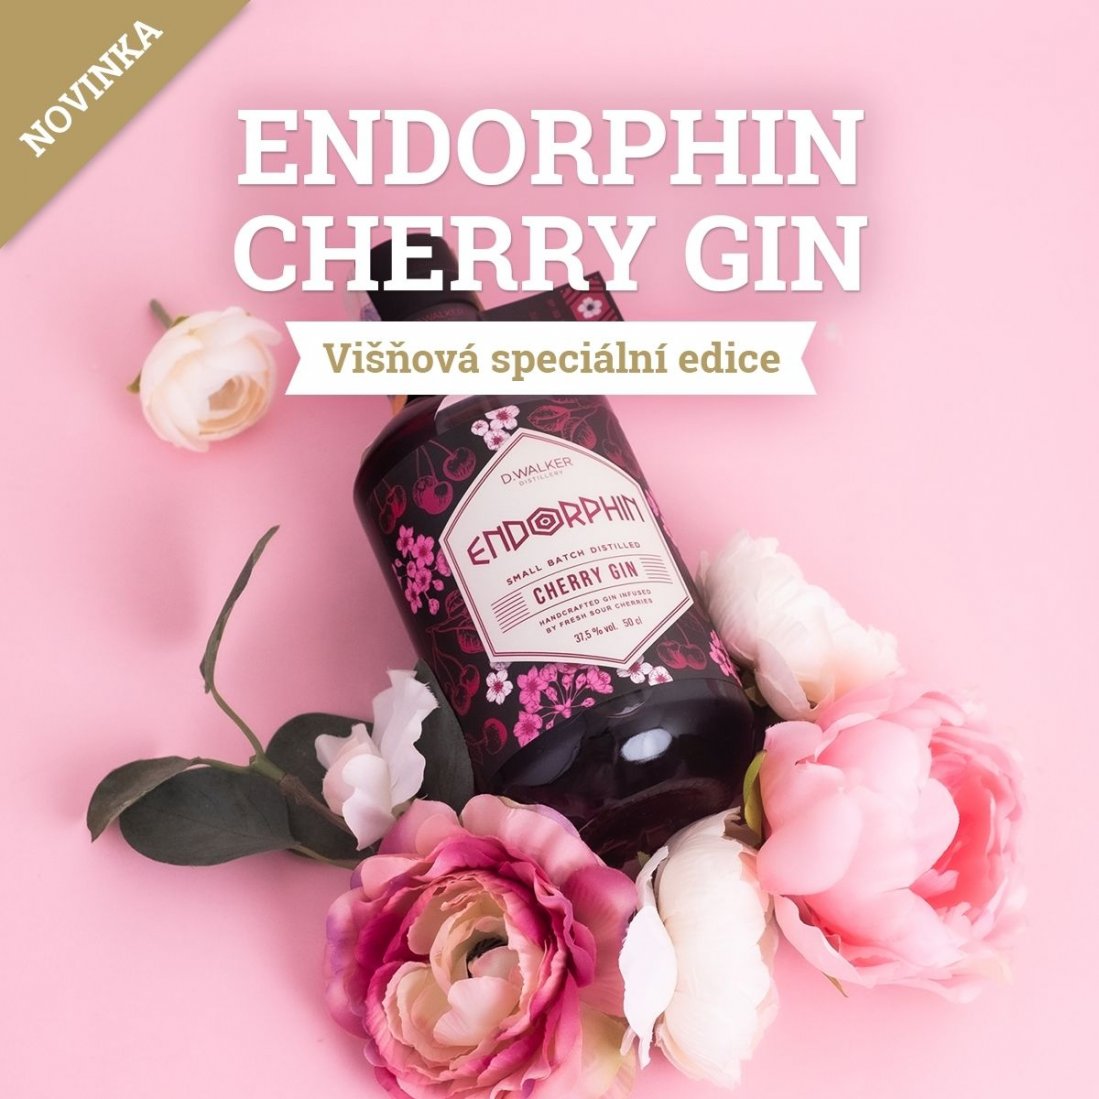 Endorphin Cherry Gin